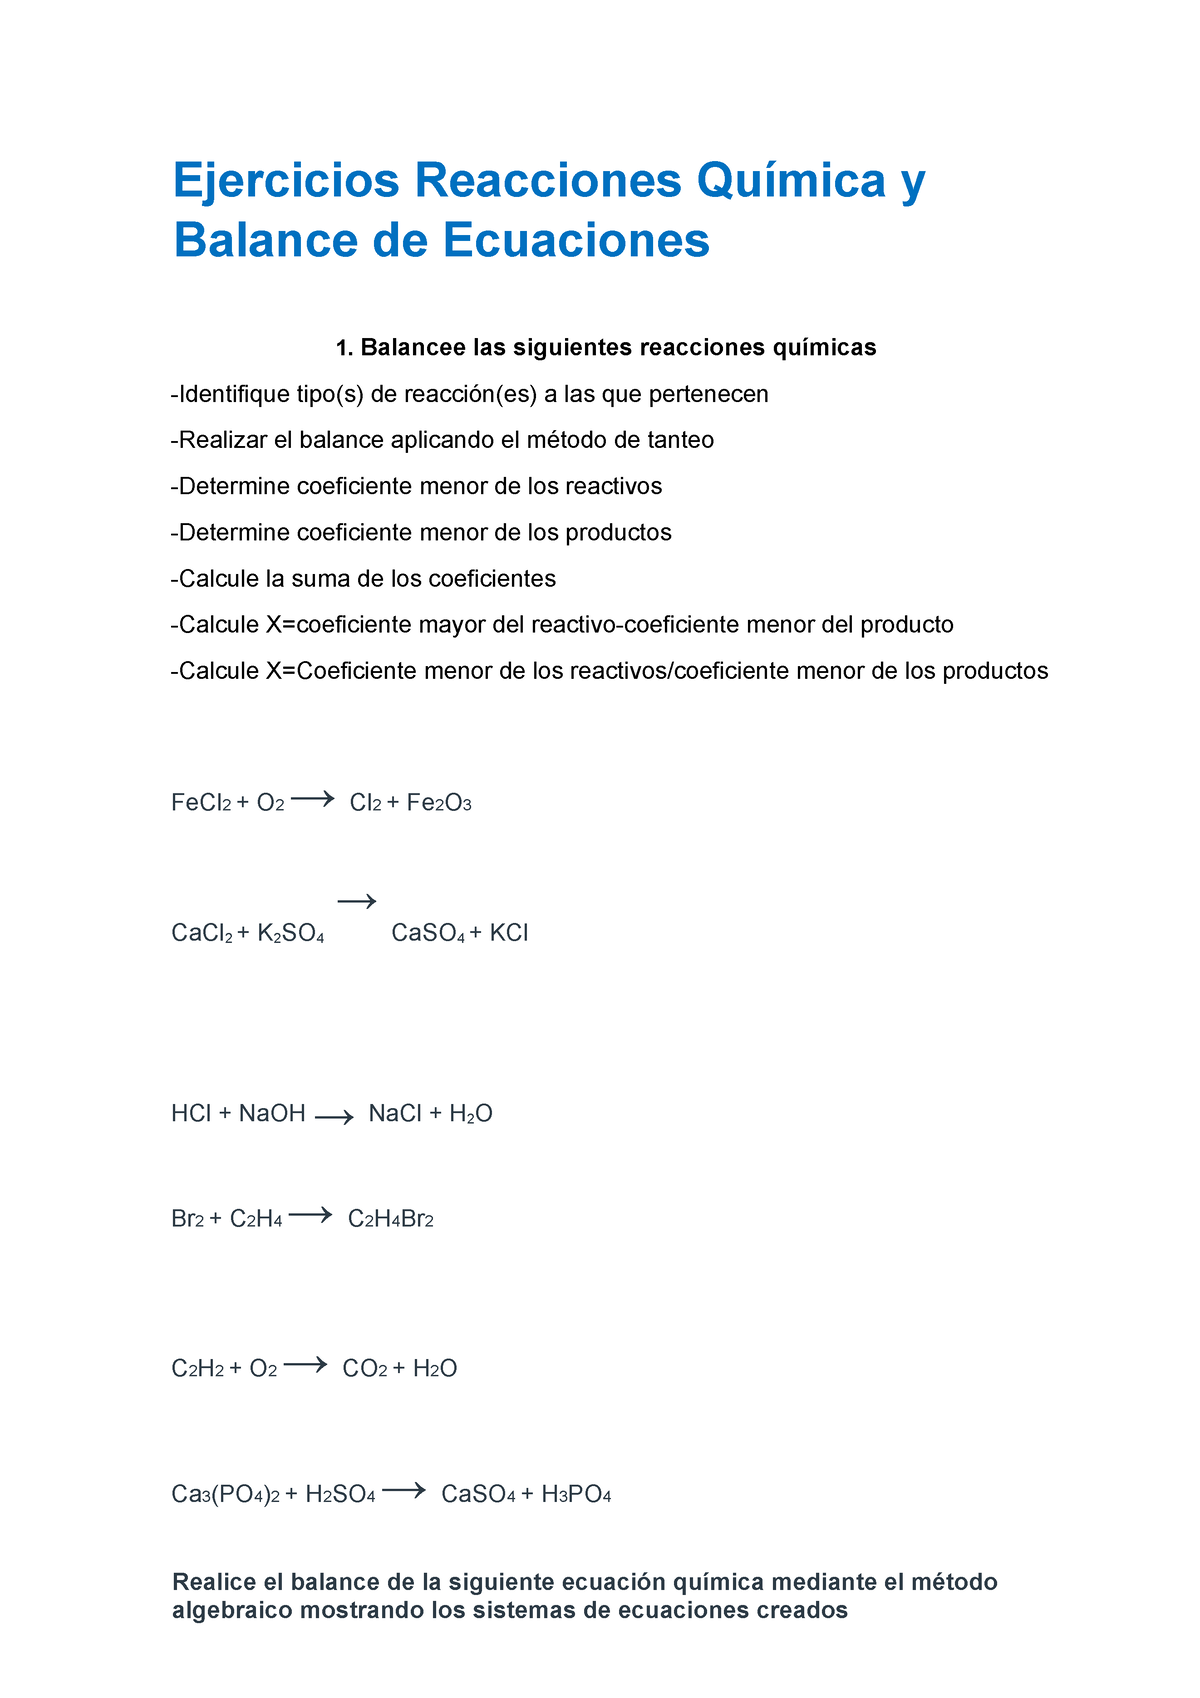 Ejercicios De Reacciones Quimica Y Balance De Ecuaciones Quimica General Ejercicios Reacciones 1435